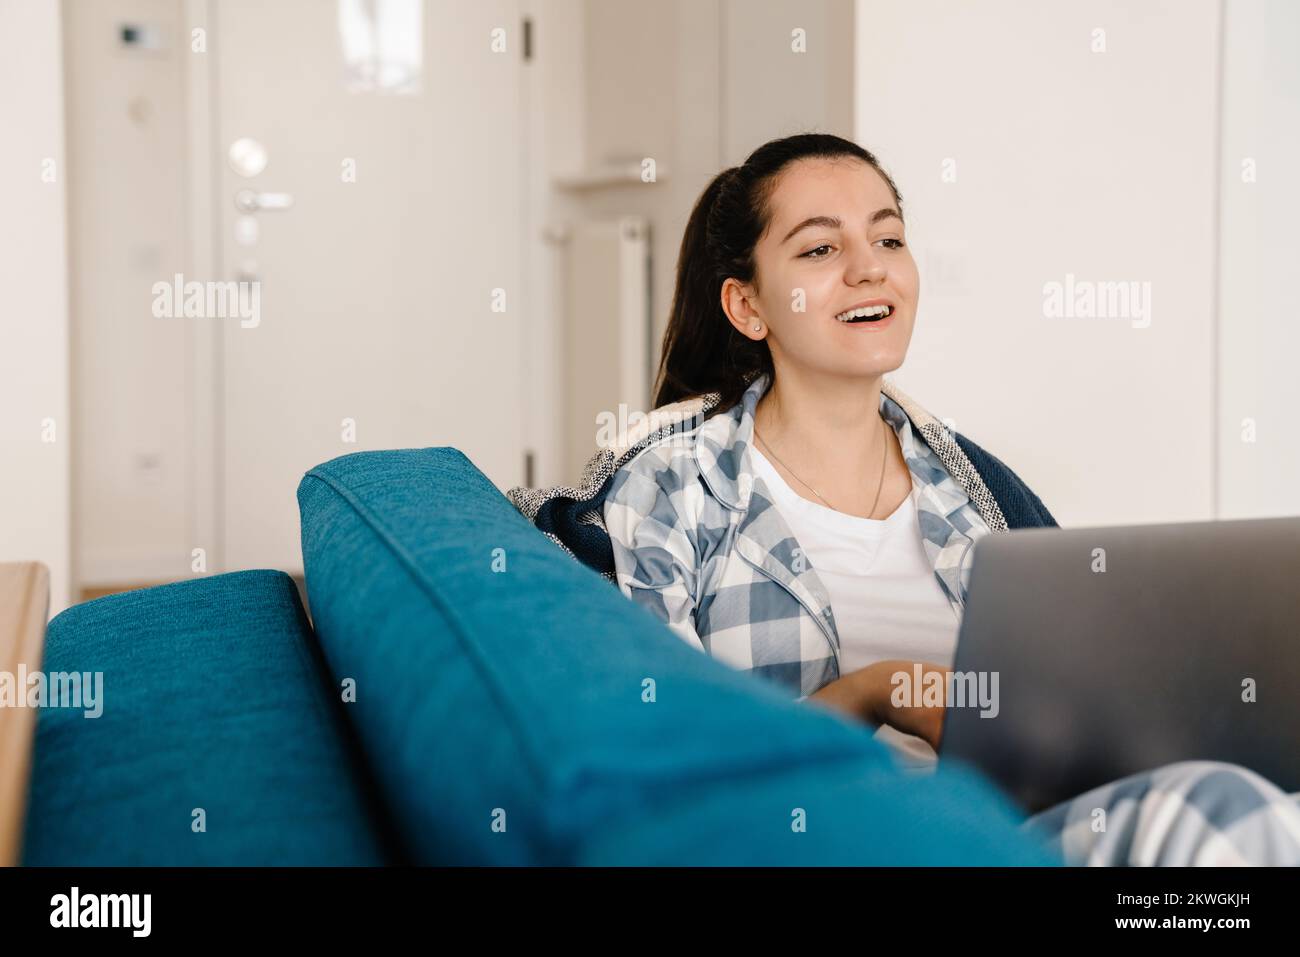 Mujer joven sonriendo y utilizando el ordenador portátil mientras descansa en el sofá de la casa Foto de stock